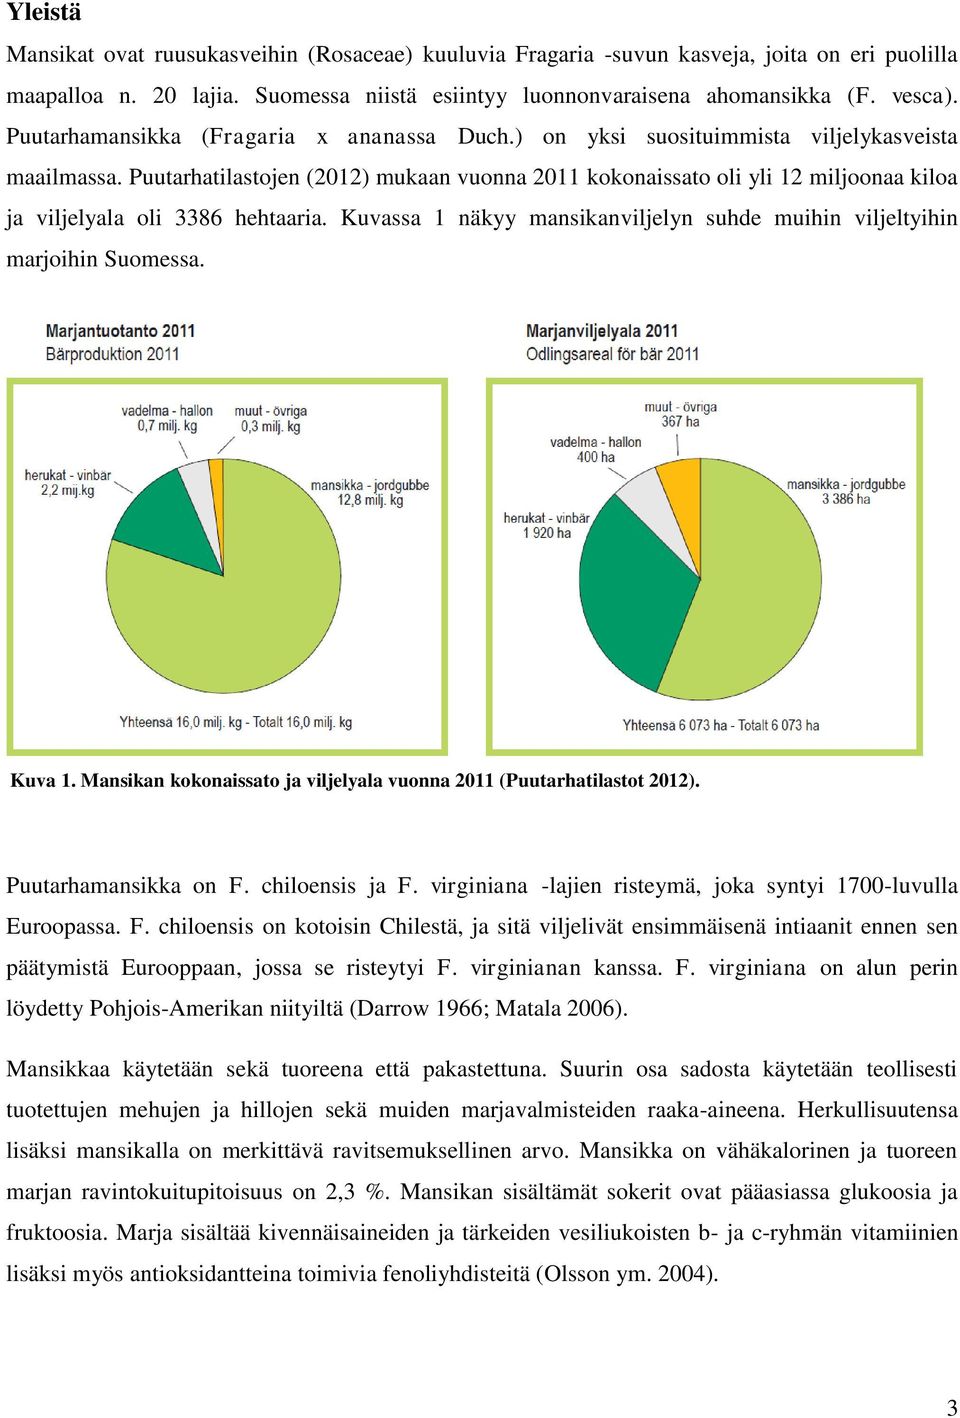 Puutarhatilastojen (2012) mukaan vuonna 2011 kokonaissato oli yli 12 miljoonaa kiloa ja viljelyala oli 3386 hehtaaria. Kuvassa 1 näkyy mansikanviljelyn suhde muihin viljeltyihin marjoihin Suomessa.